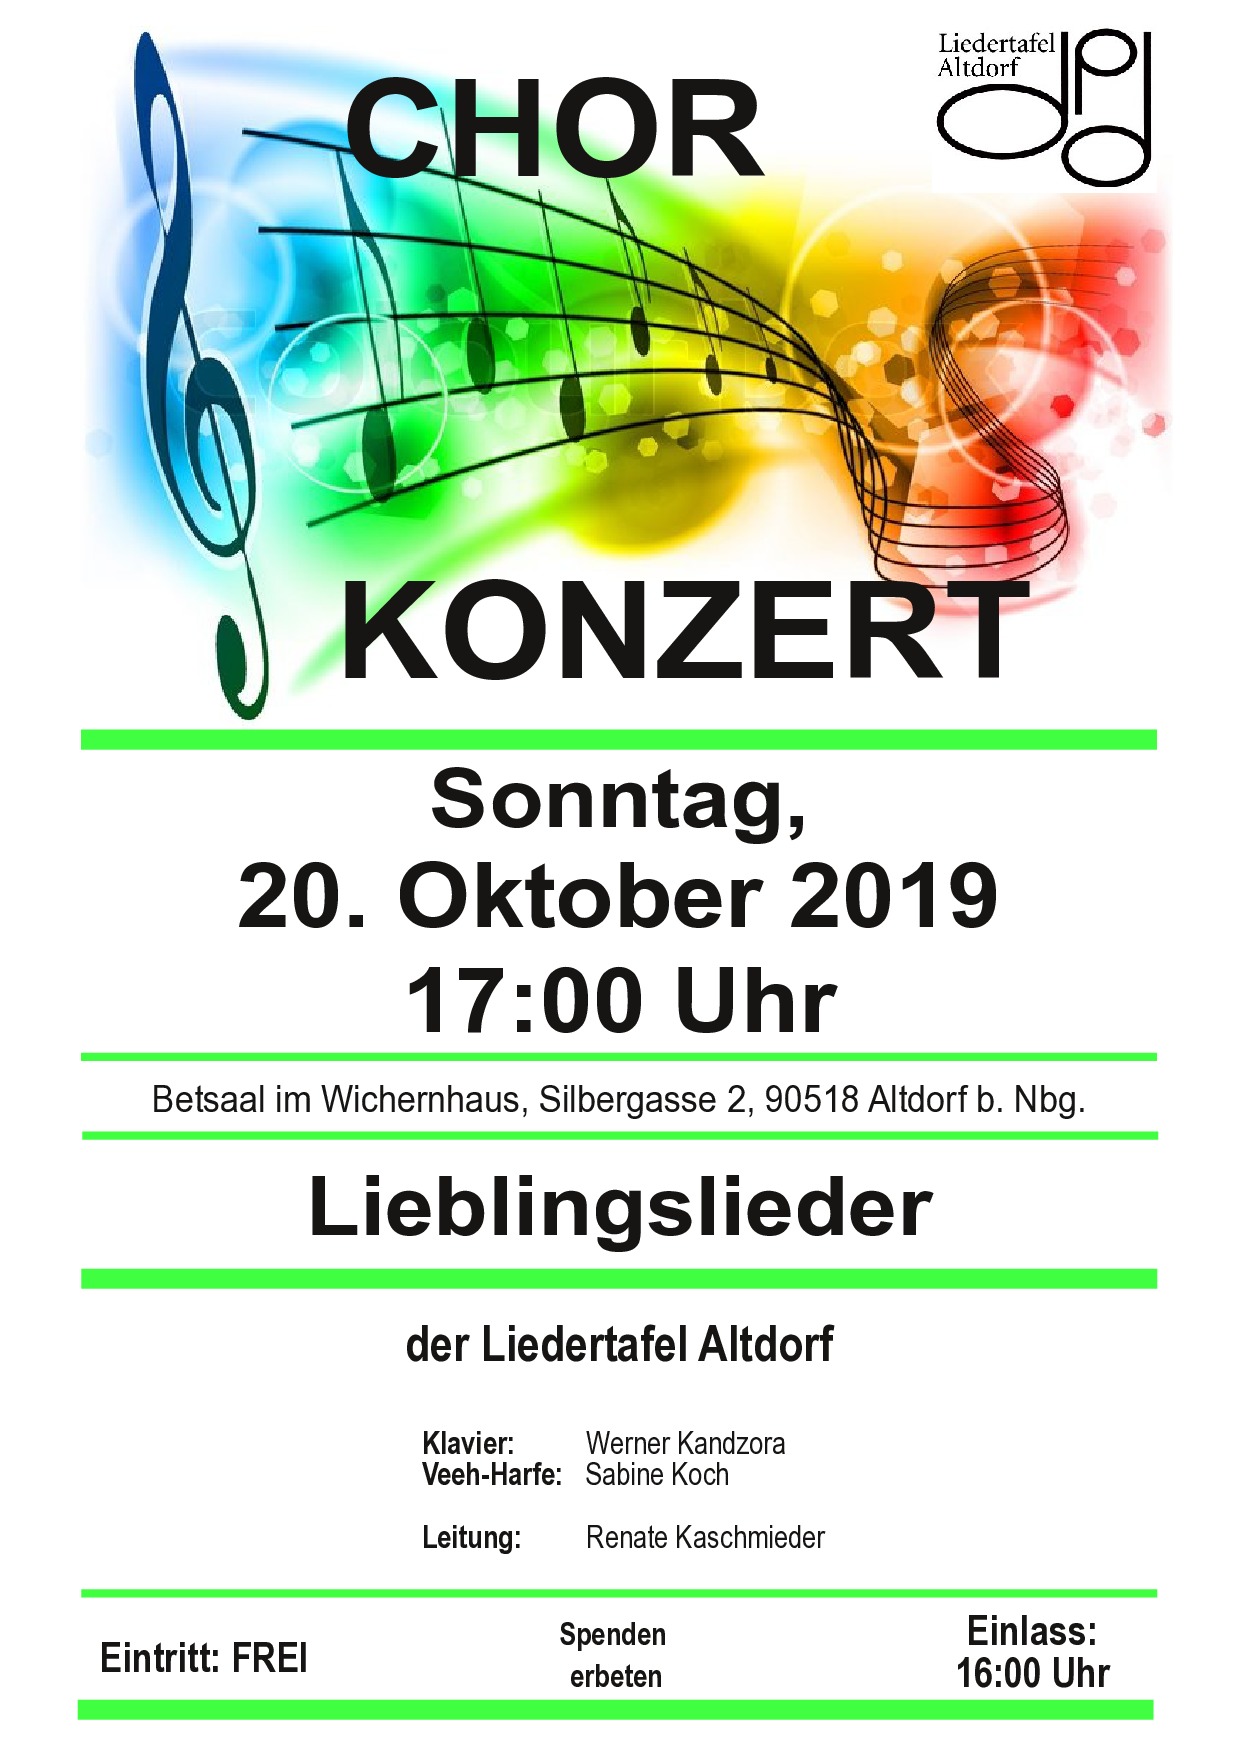 Chor Konzert der Liedertafel Altdorf